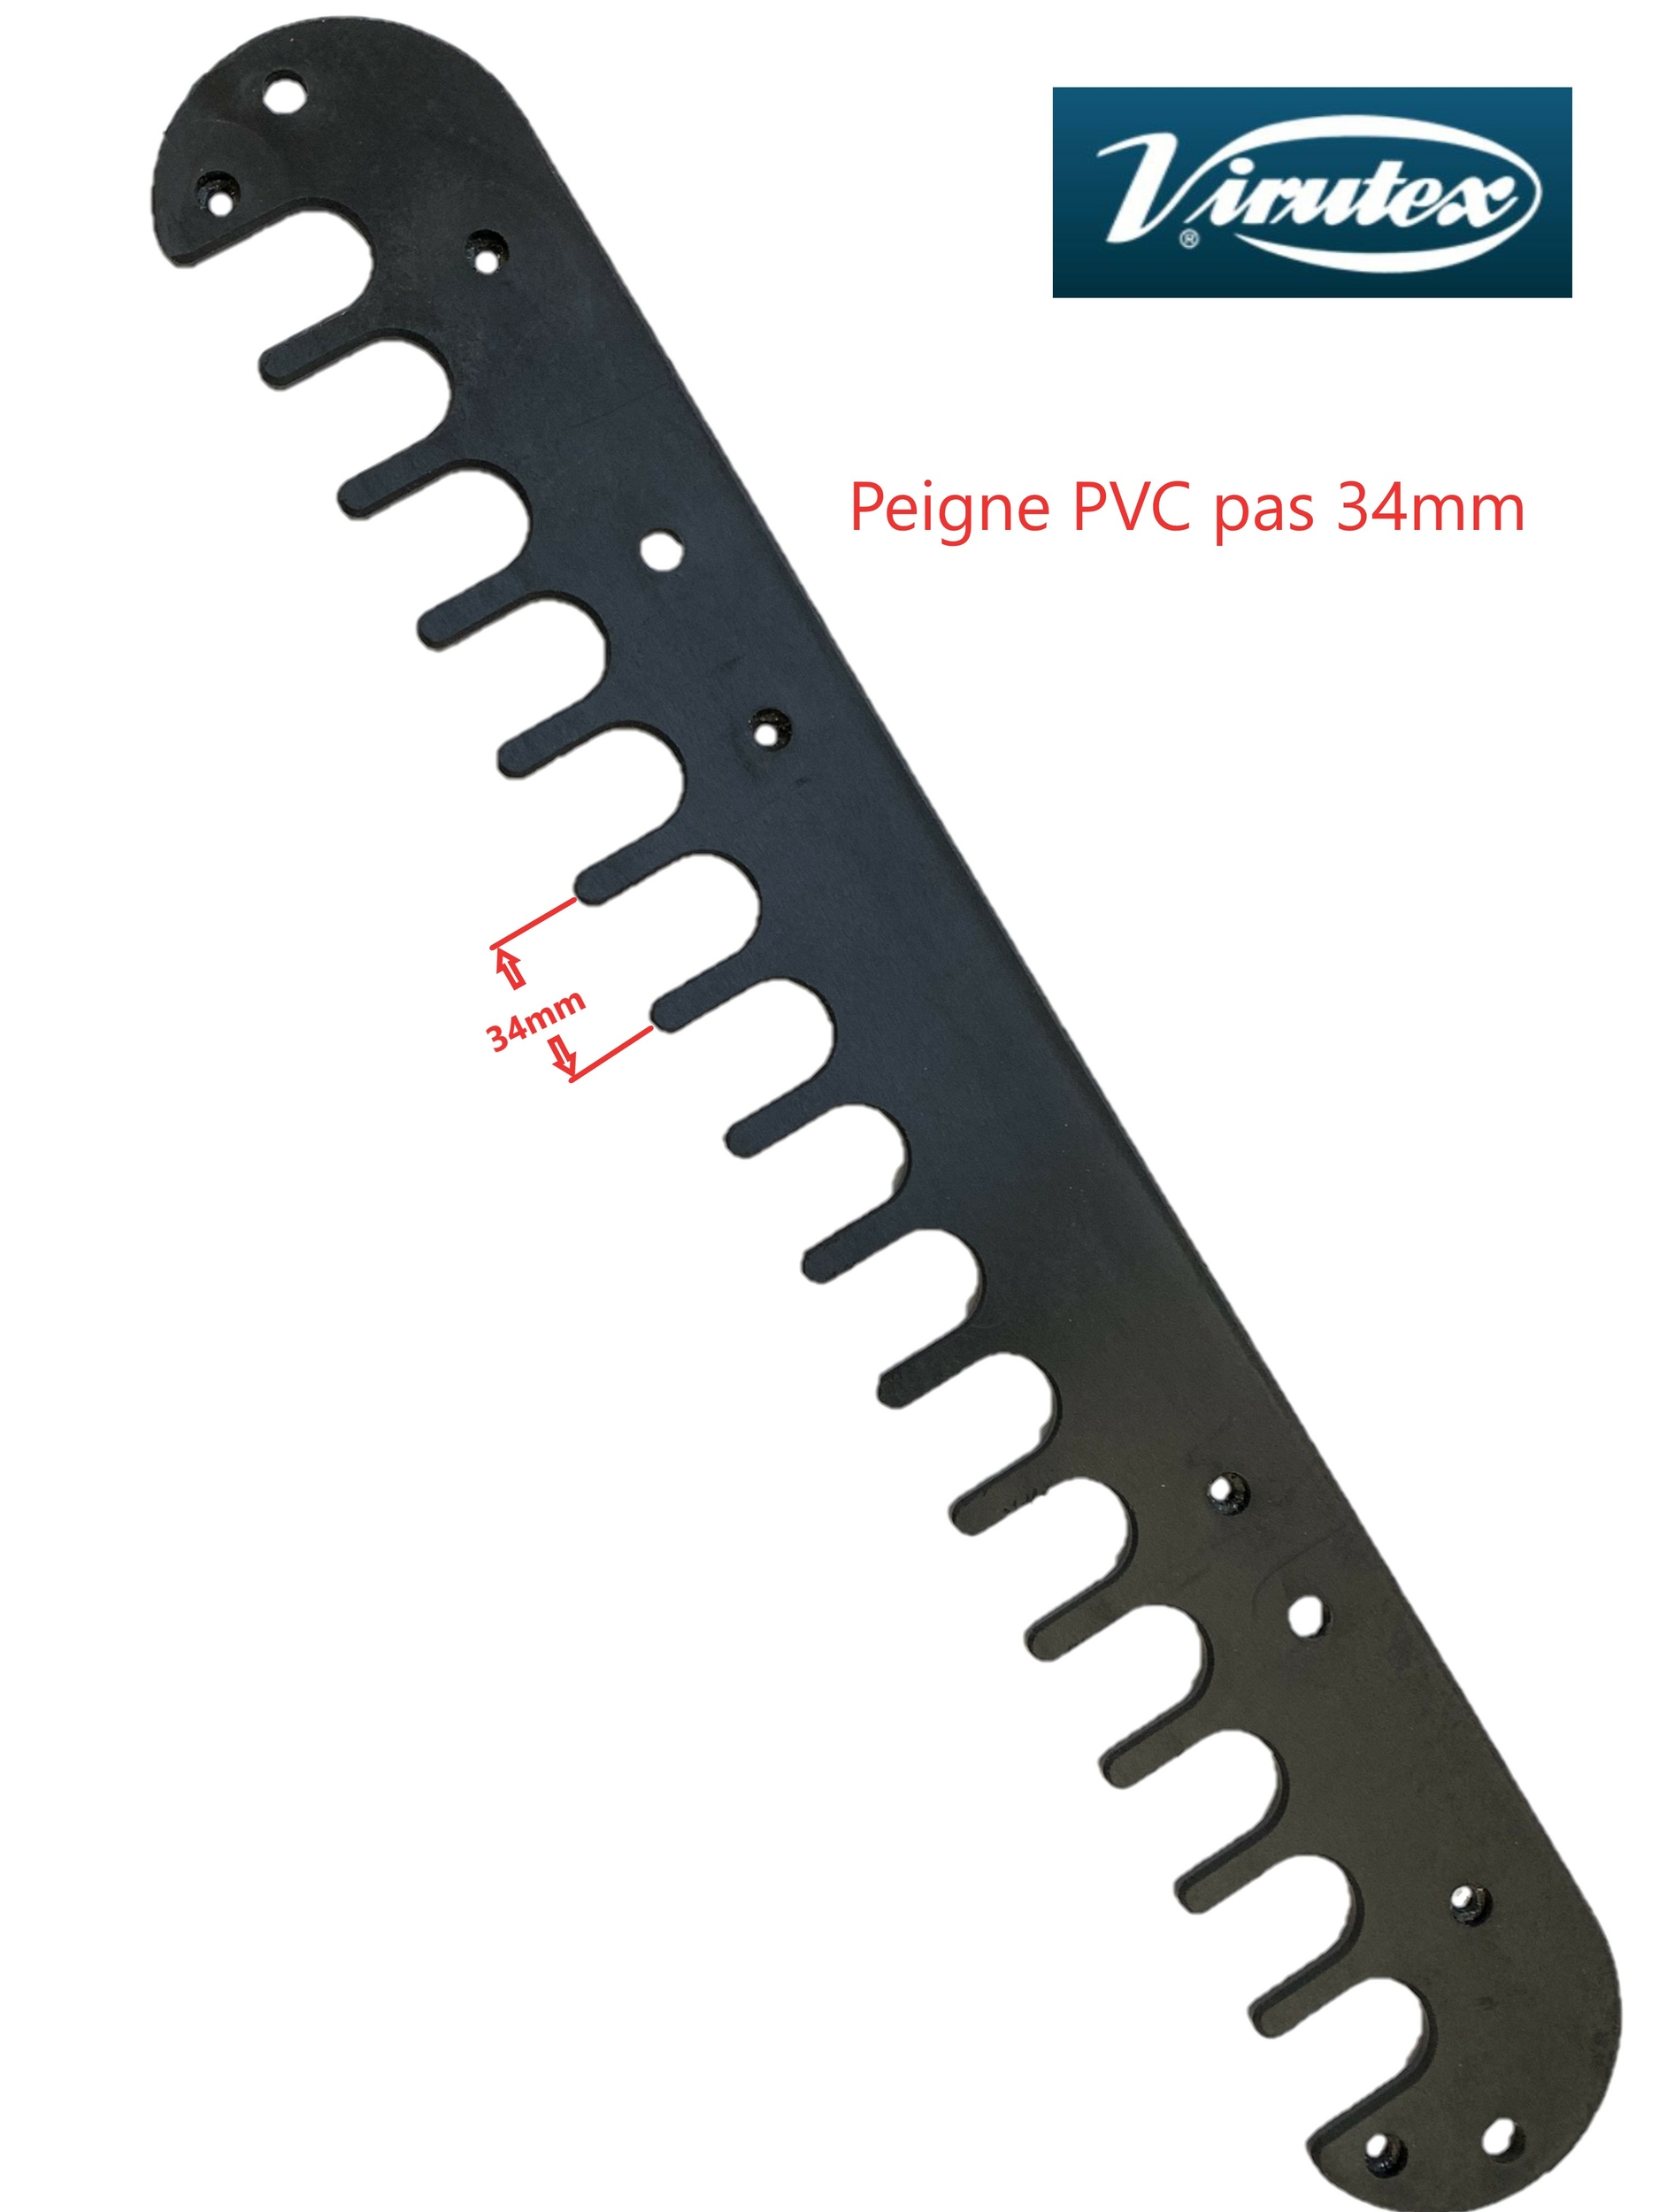 Peigne PVC copiage gabarit queue d'aronde 34mm PL11 Virutex